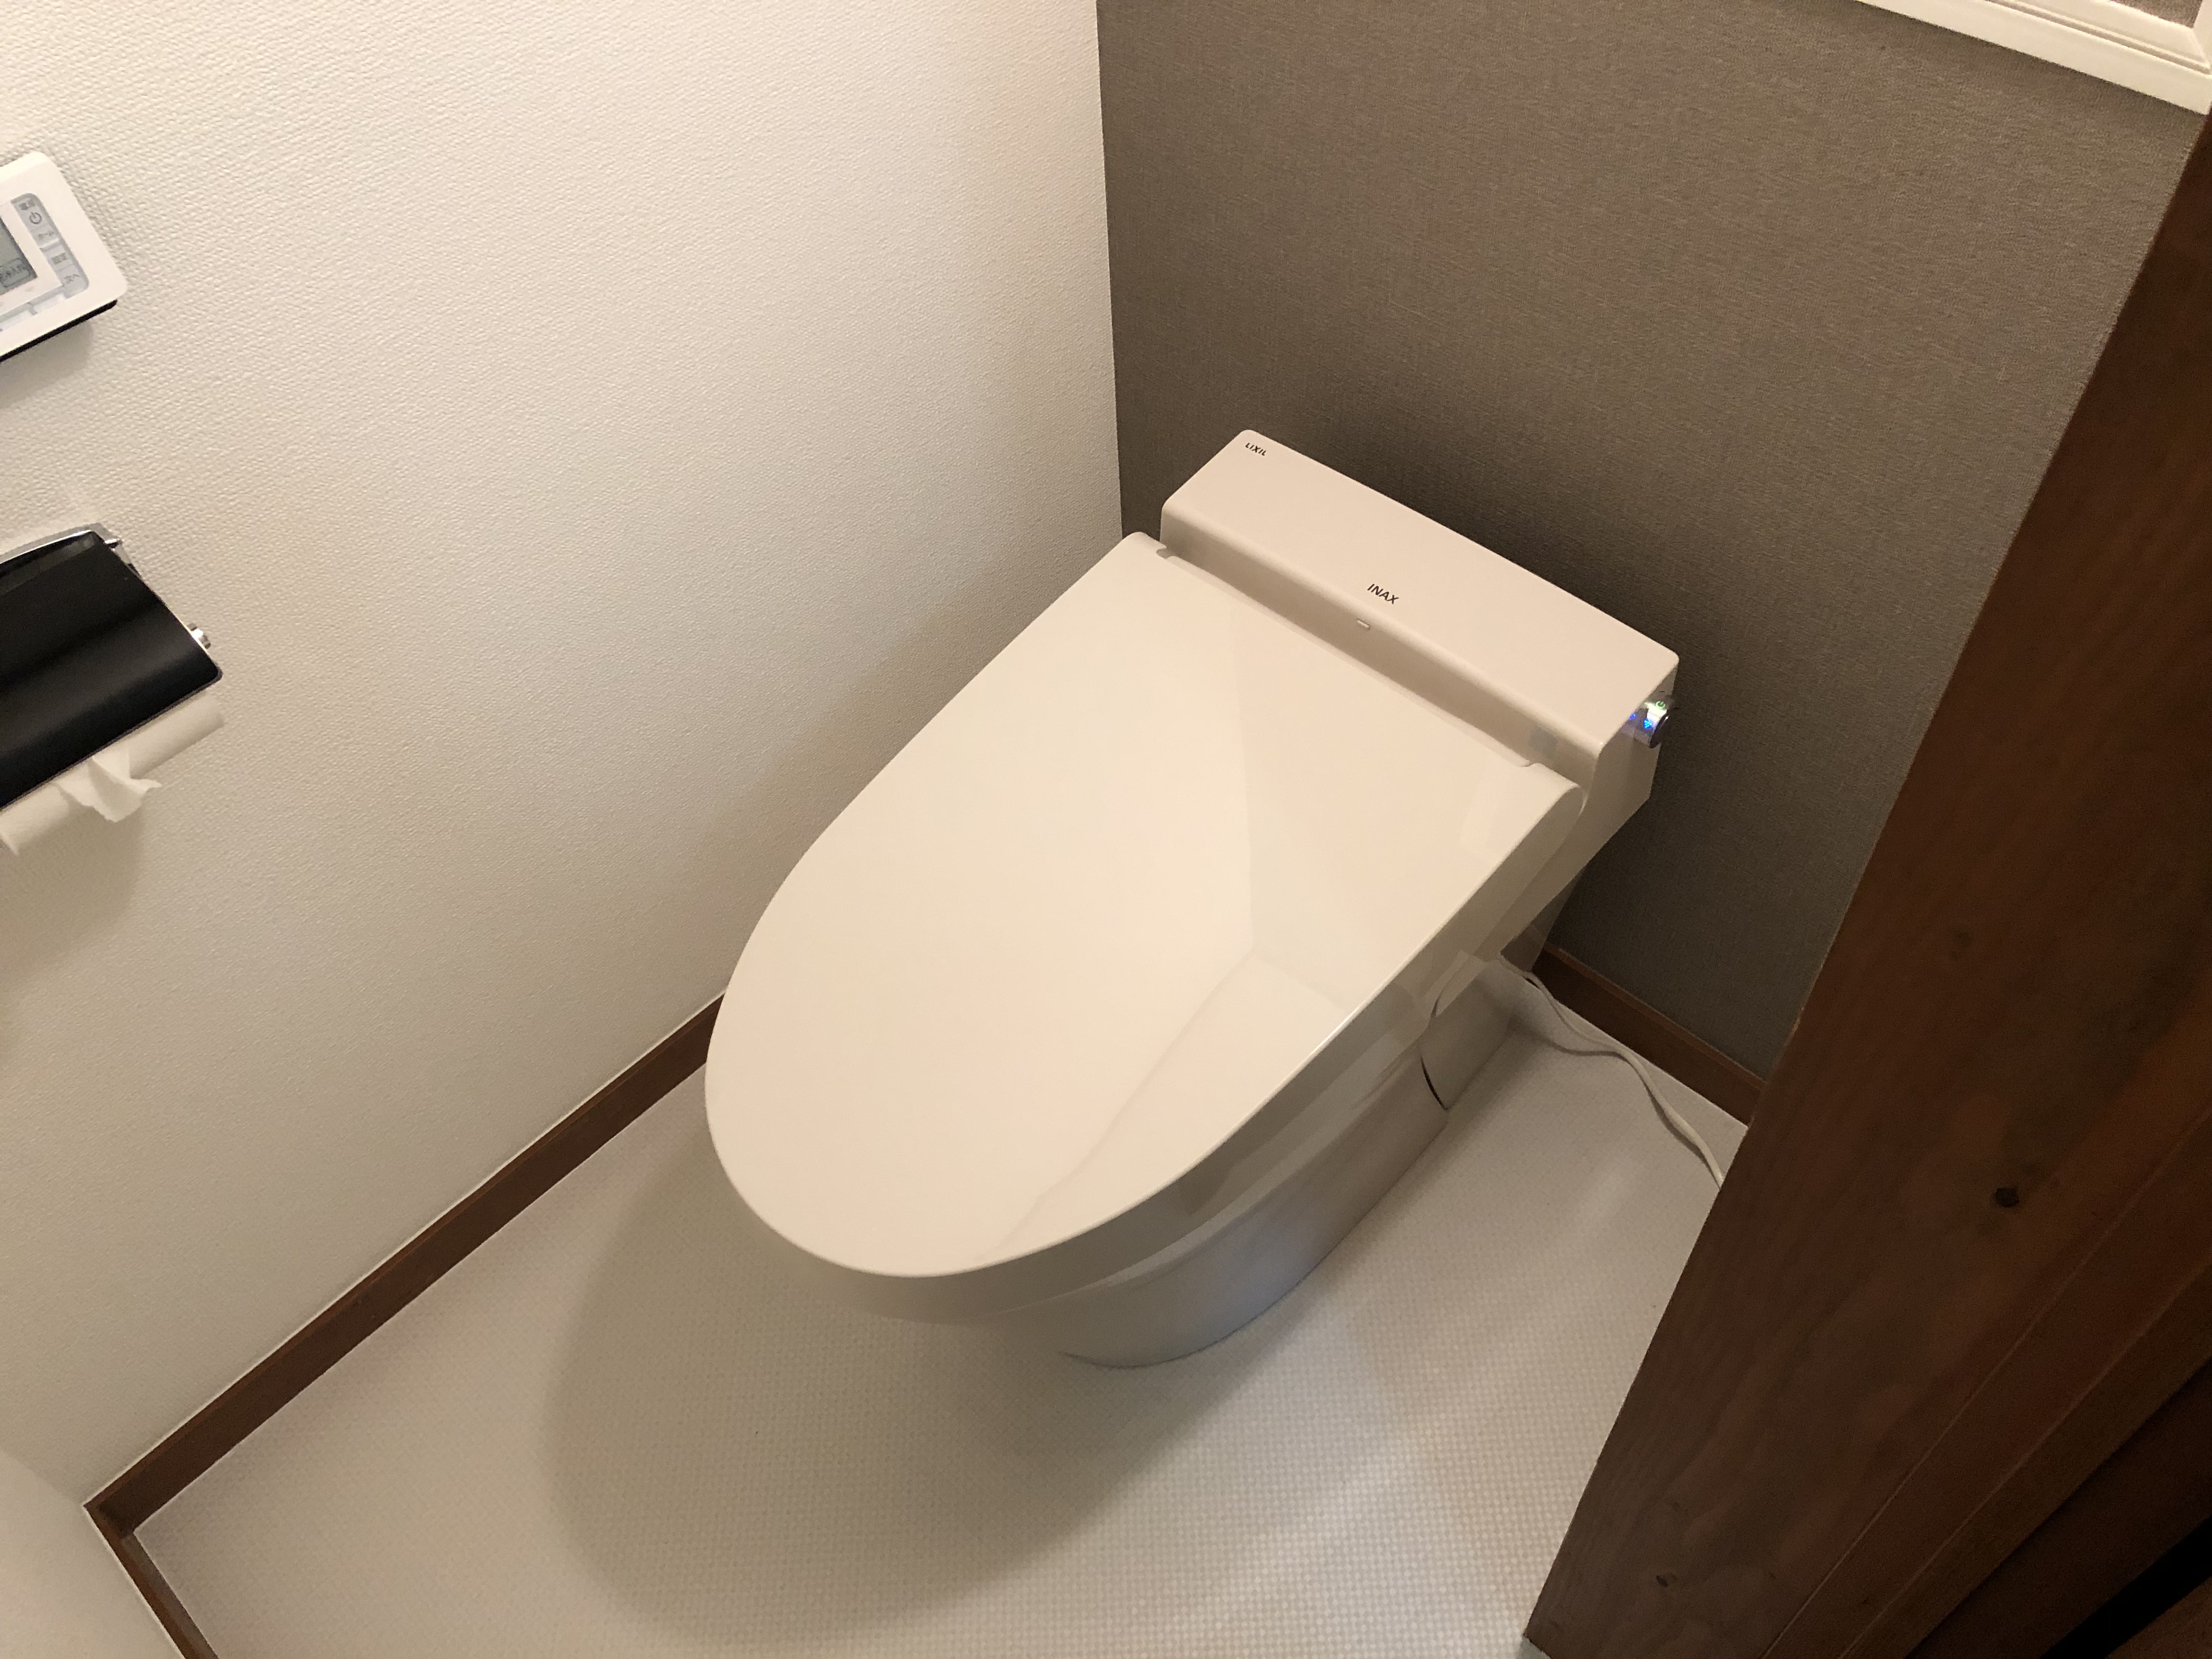 大阪市天王寺区　マンションの洋式トイレ取替工事と内装工事